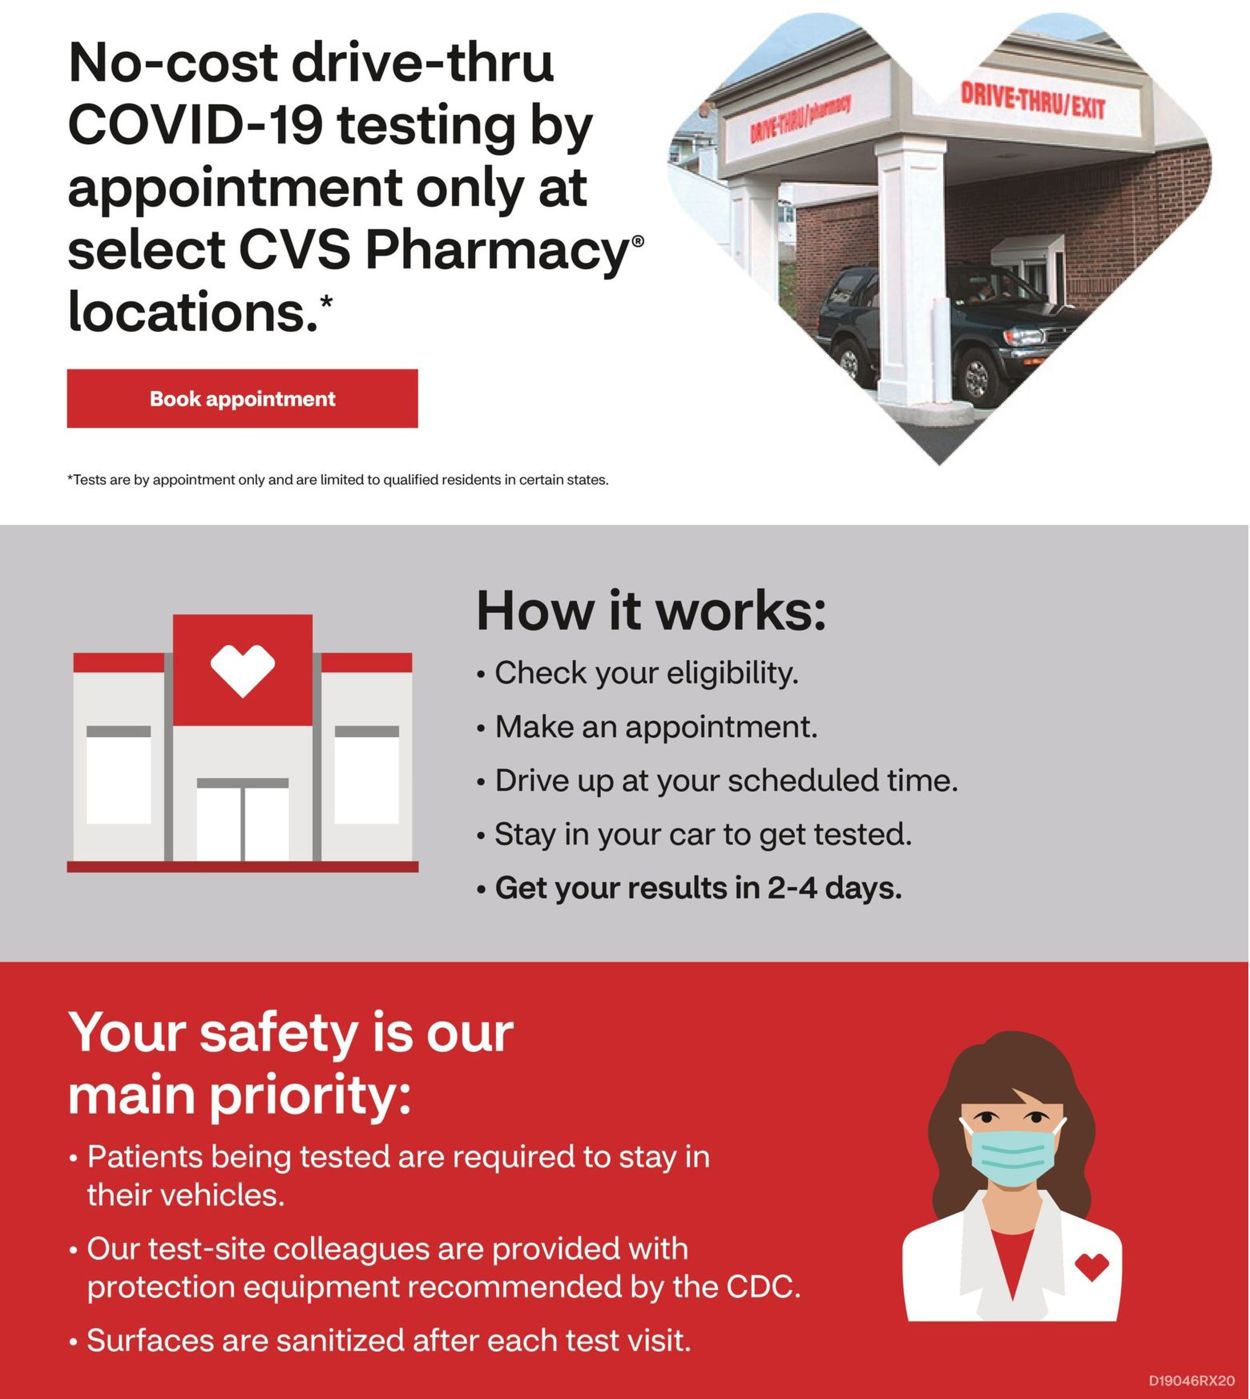 Catalogue CVS Pharmacy from 07/19/2020